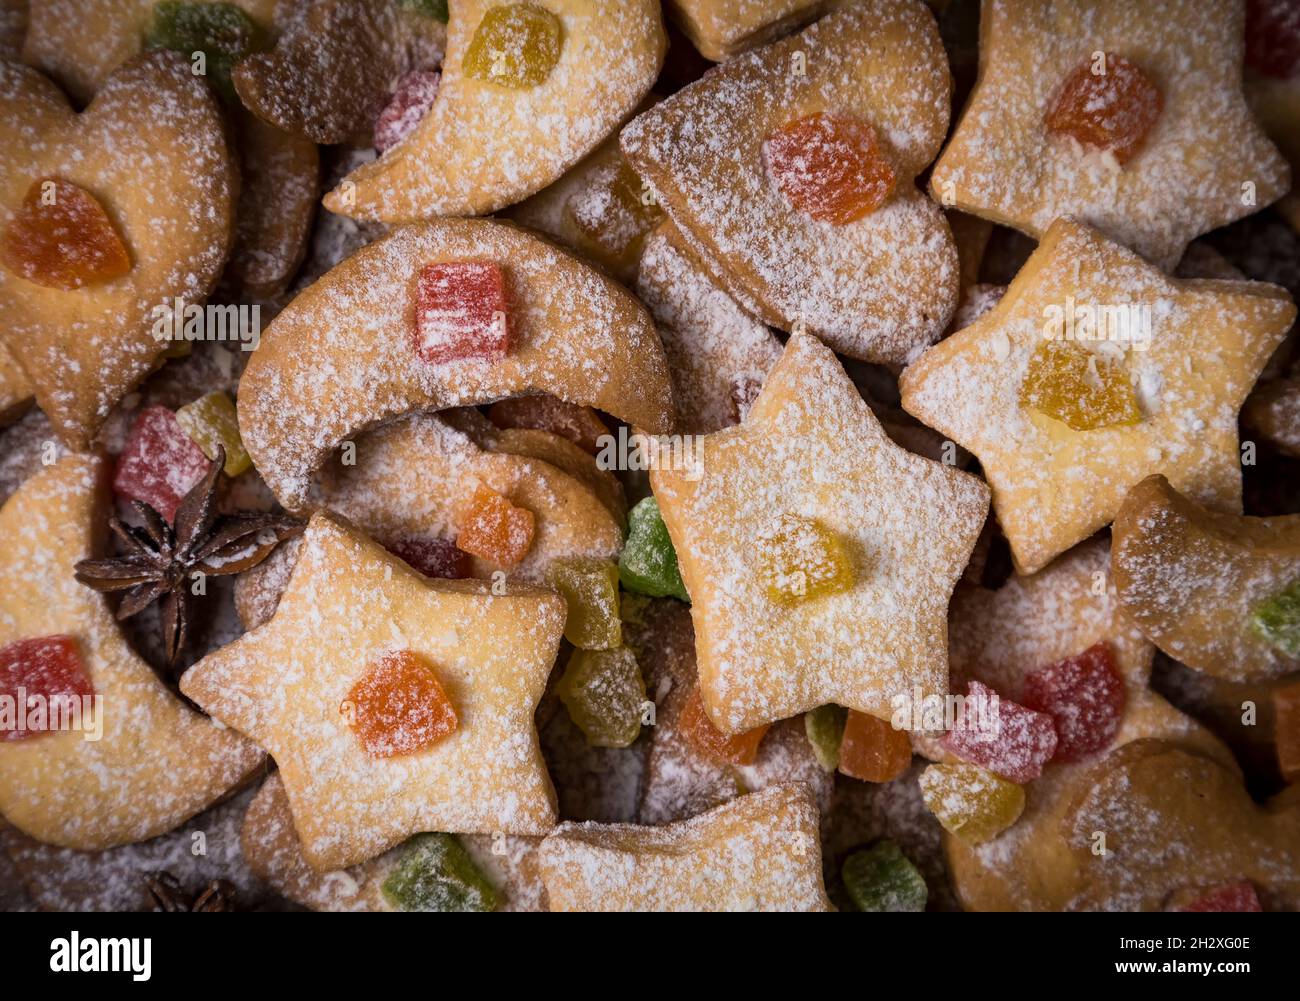 Fond de biscuits au sucre faits maison en coeur, lune, étoiles décorées de fruits confits, sucre glace et anis étoilé japonais.Repas de Noël fes Banque D'Images